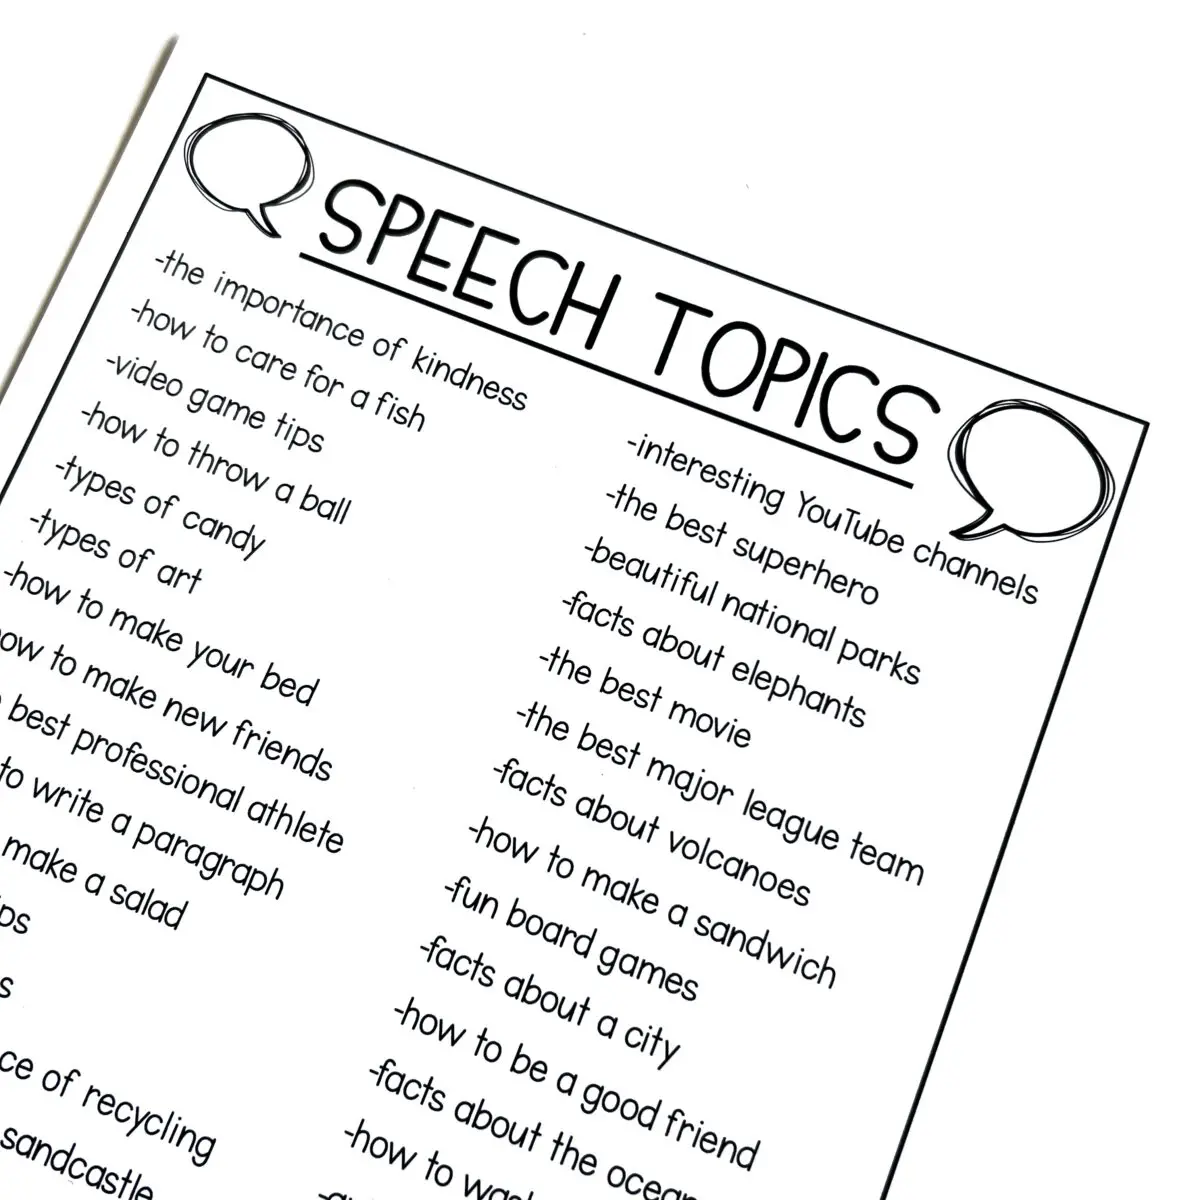 speech topics for kids